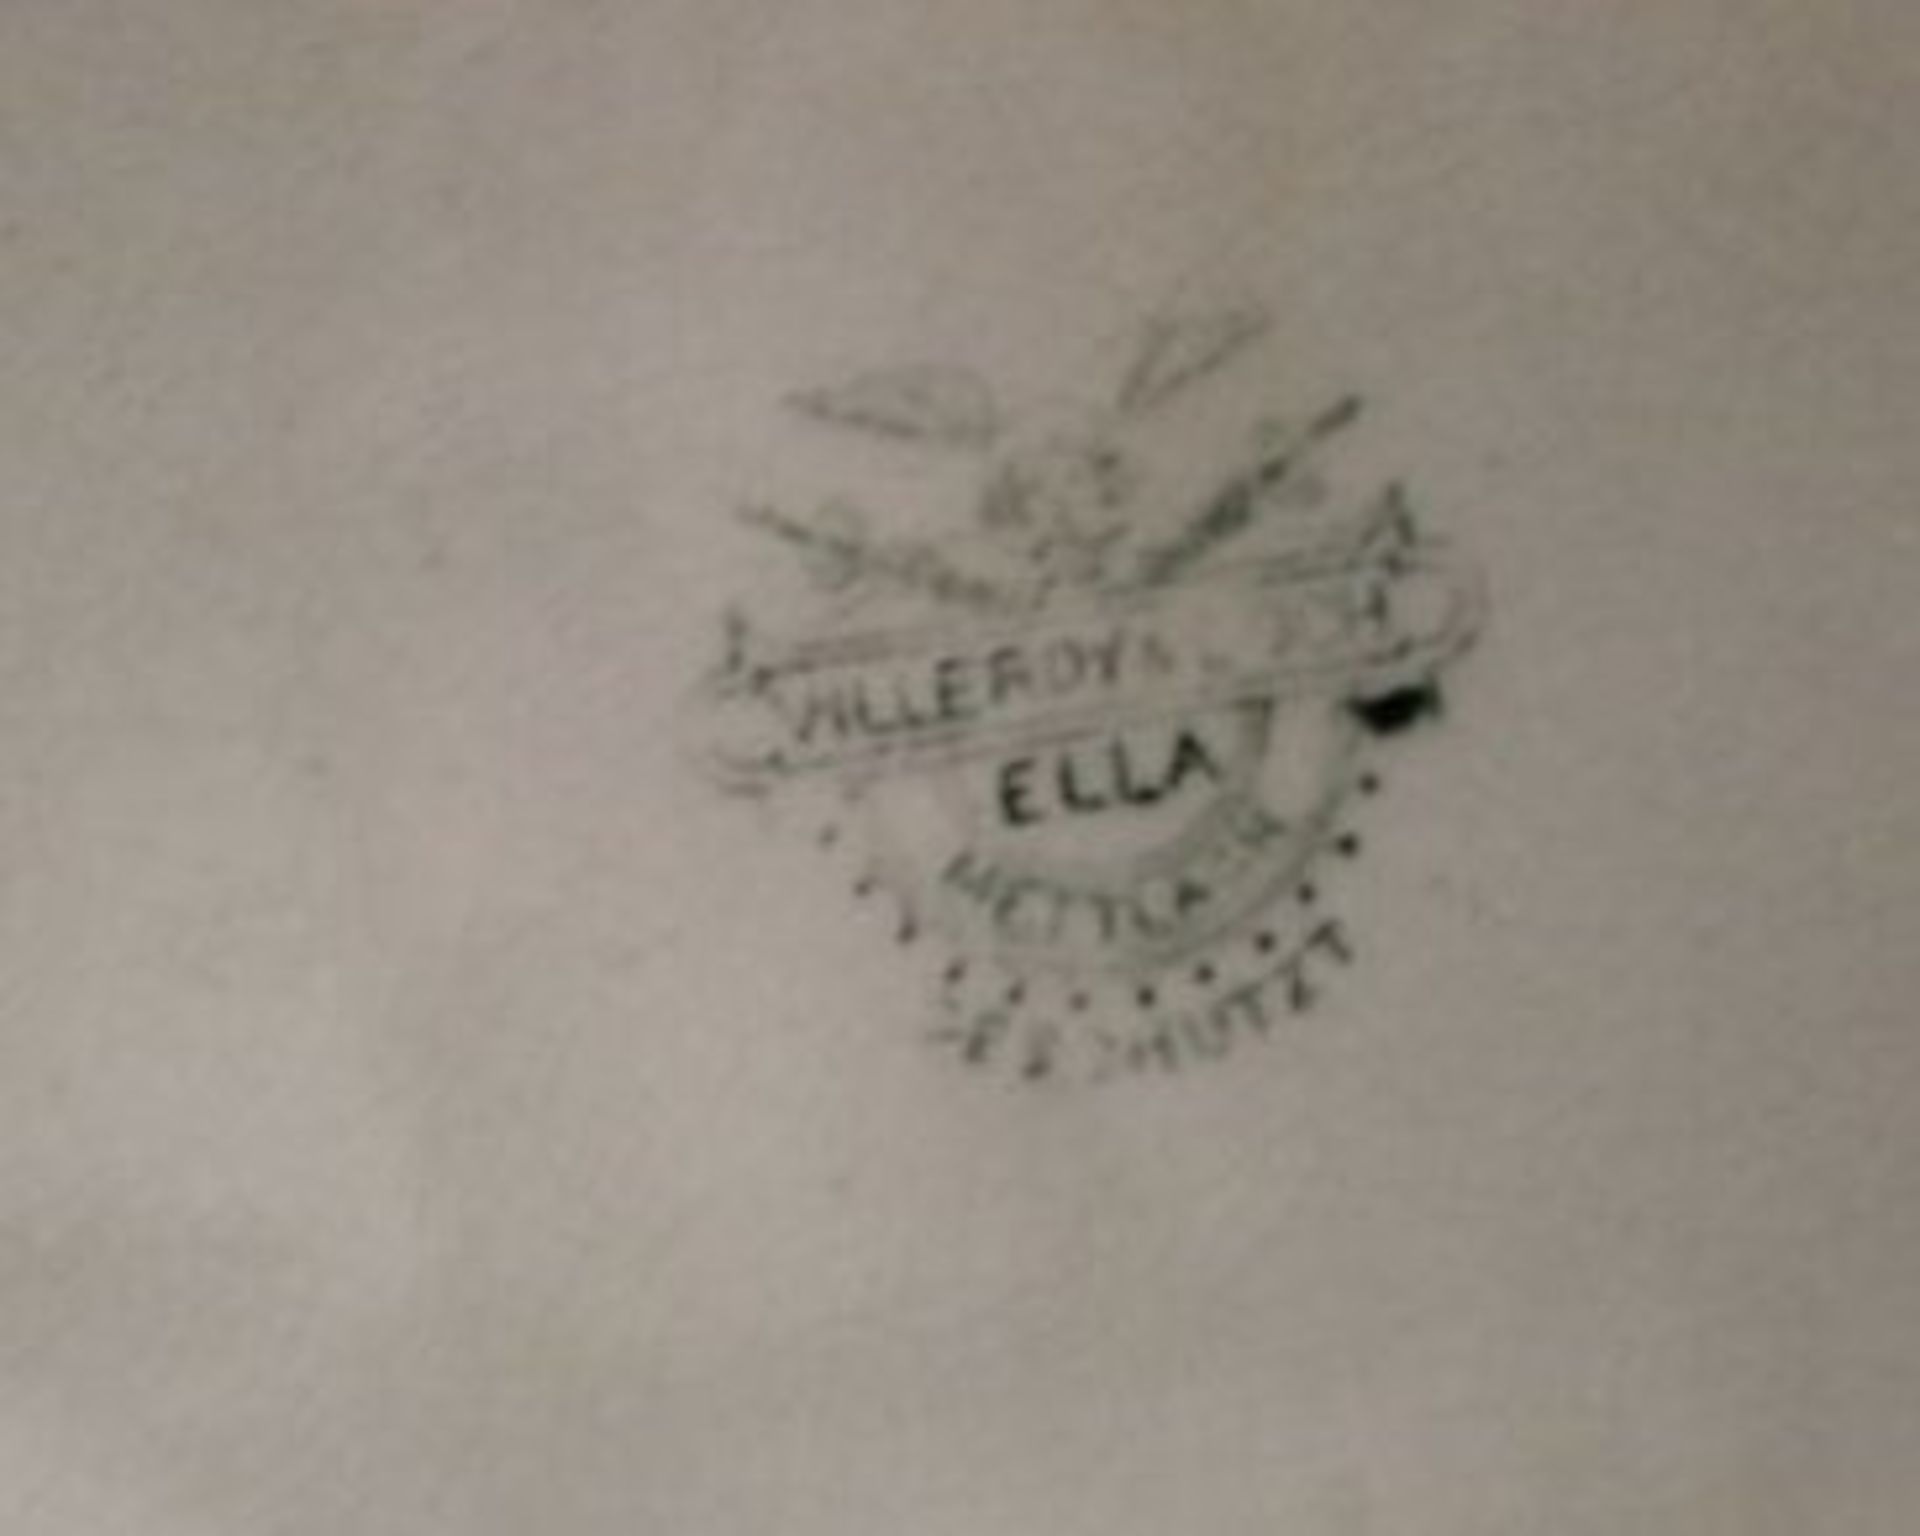 gr. Platte, Villeroy und Boch, Dekor Ella, mit Abtropfplatte, 41 x 32cm. - Image 3 of 3